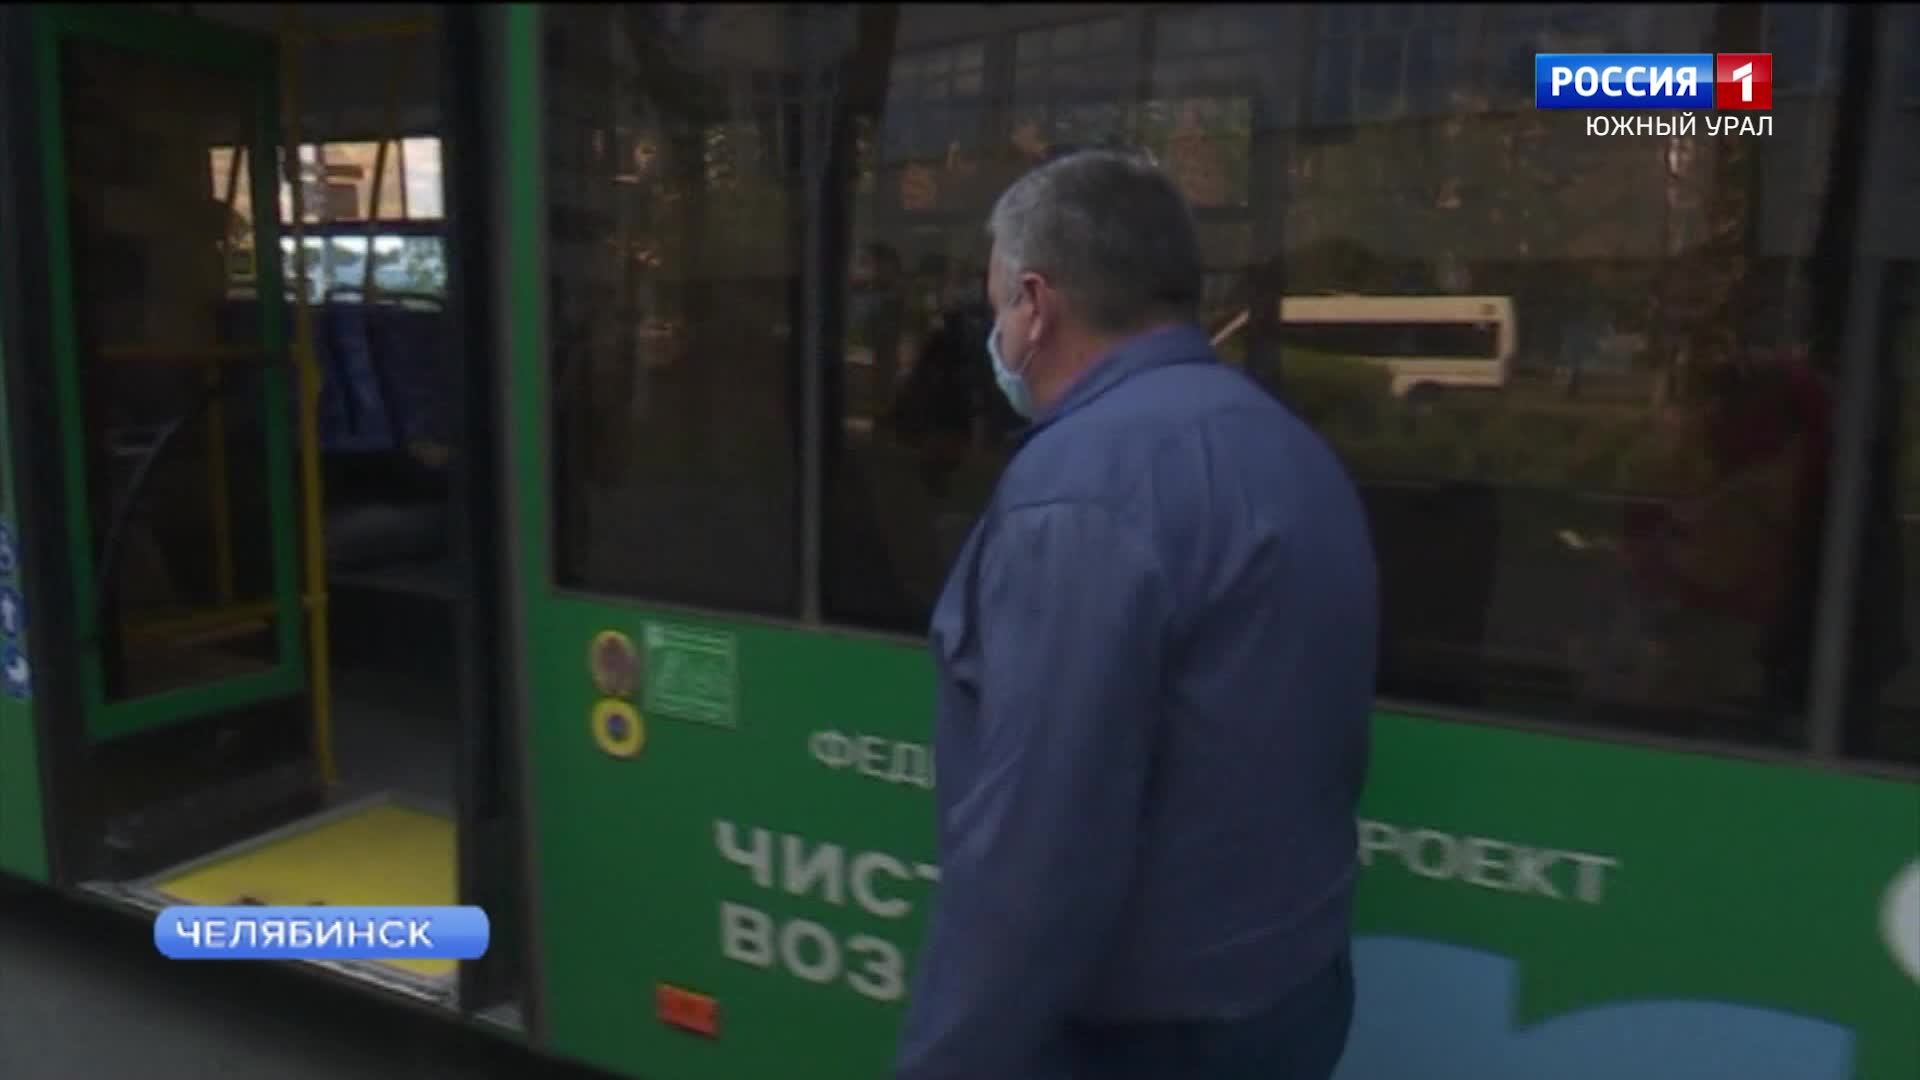 Новый садовый автобусный маршрут запустили в Челябинске